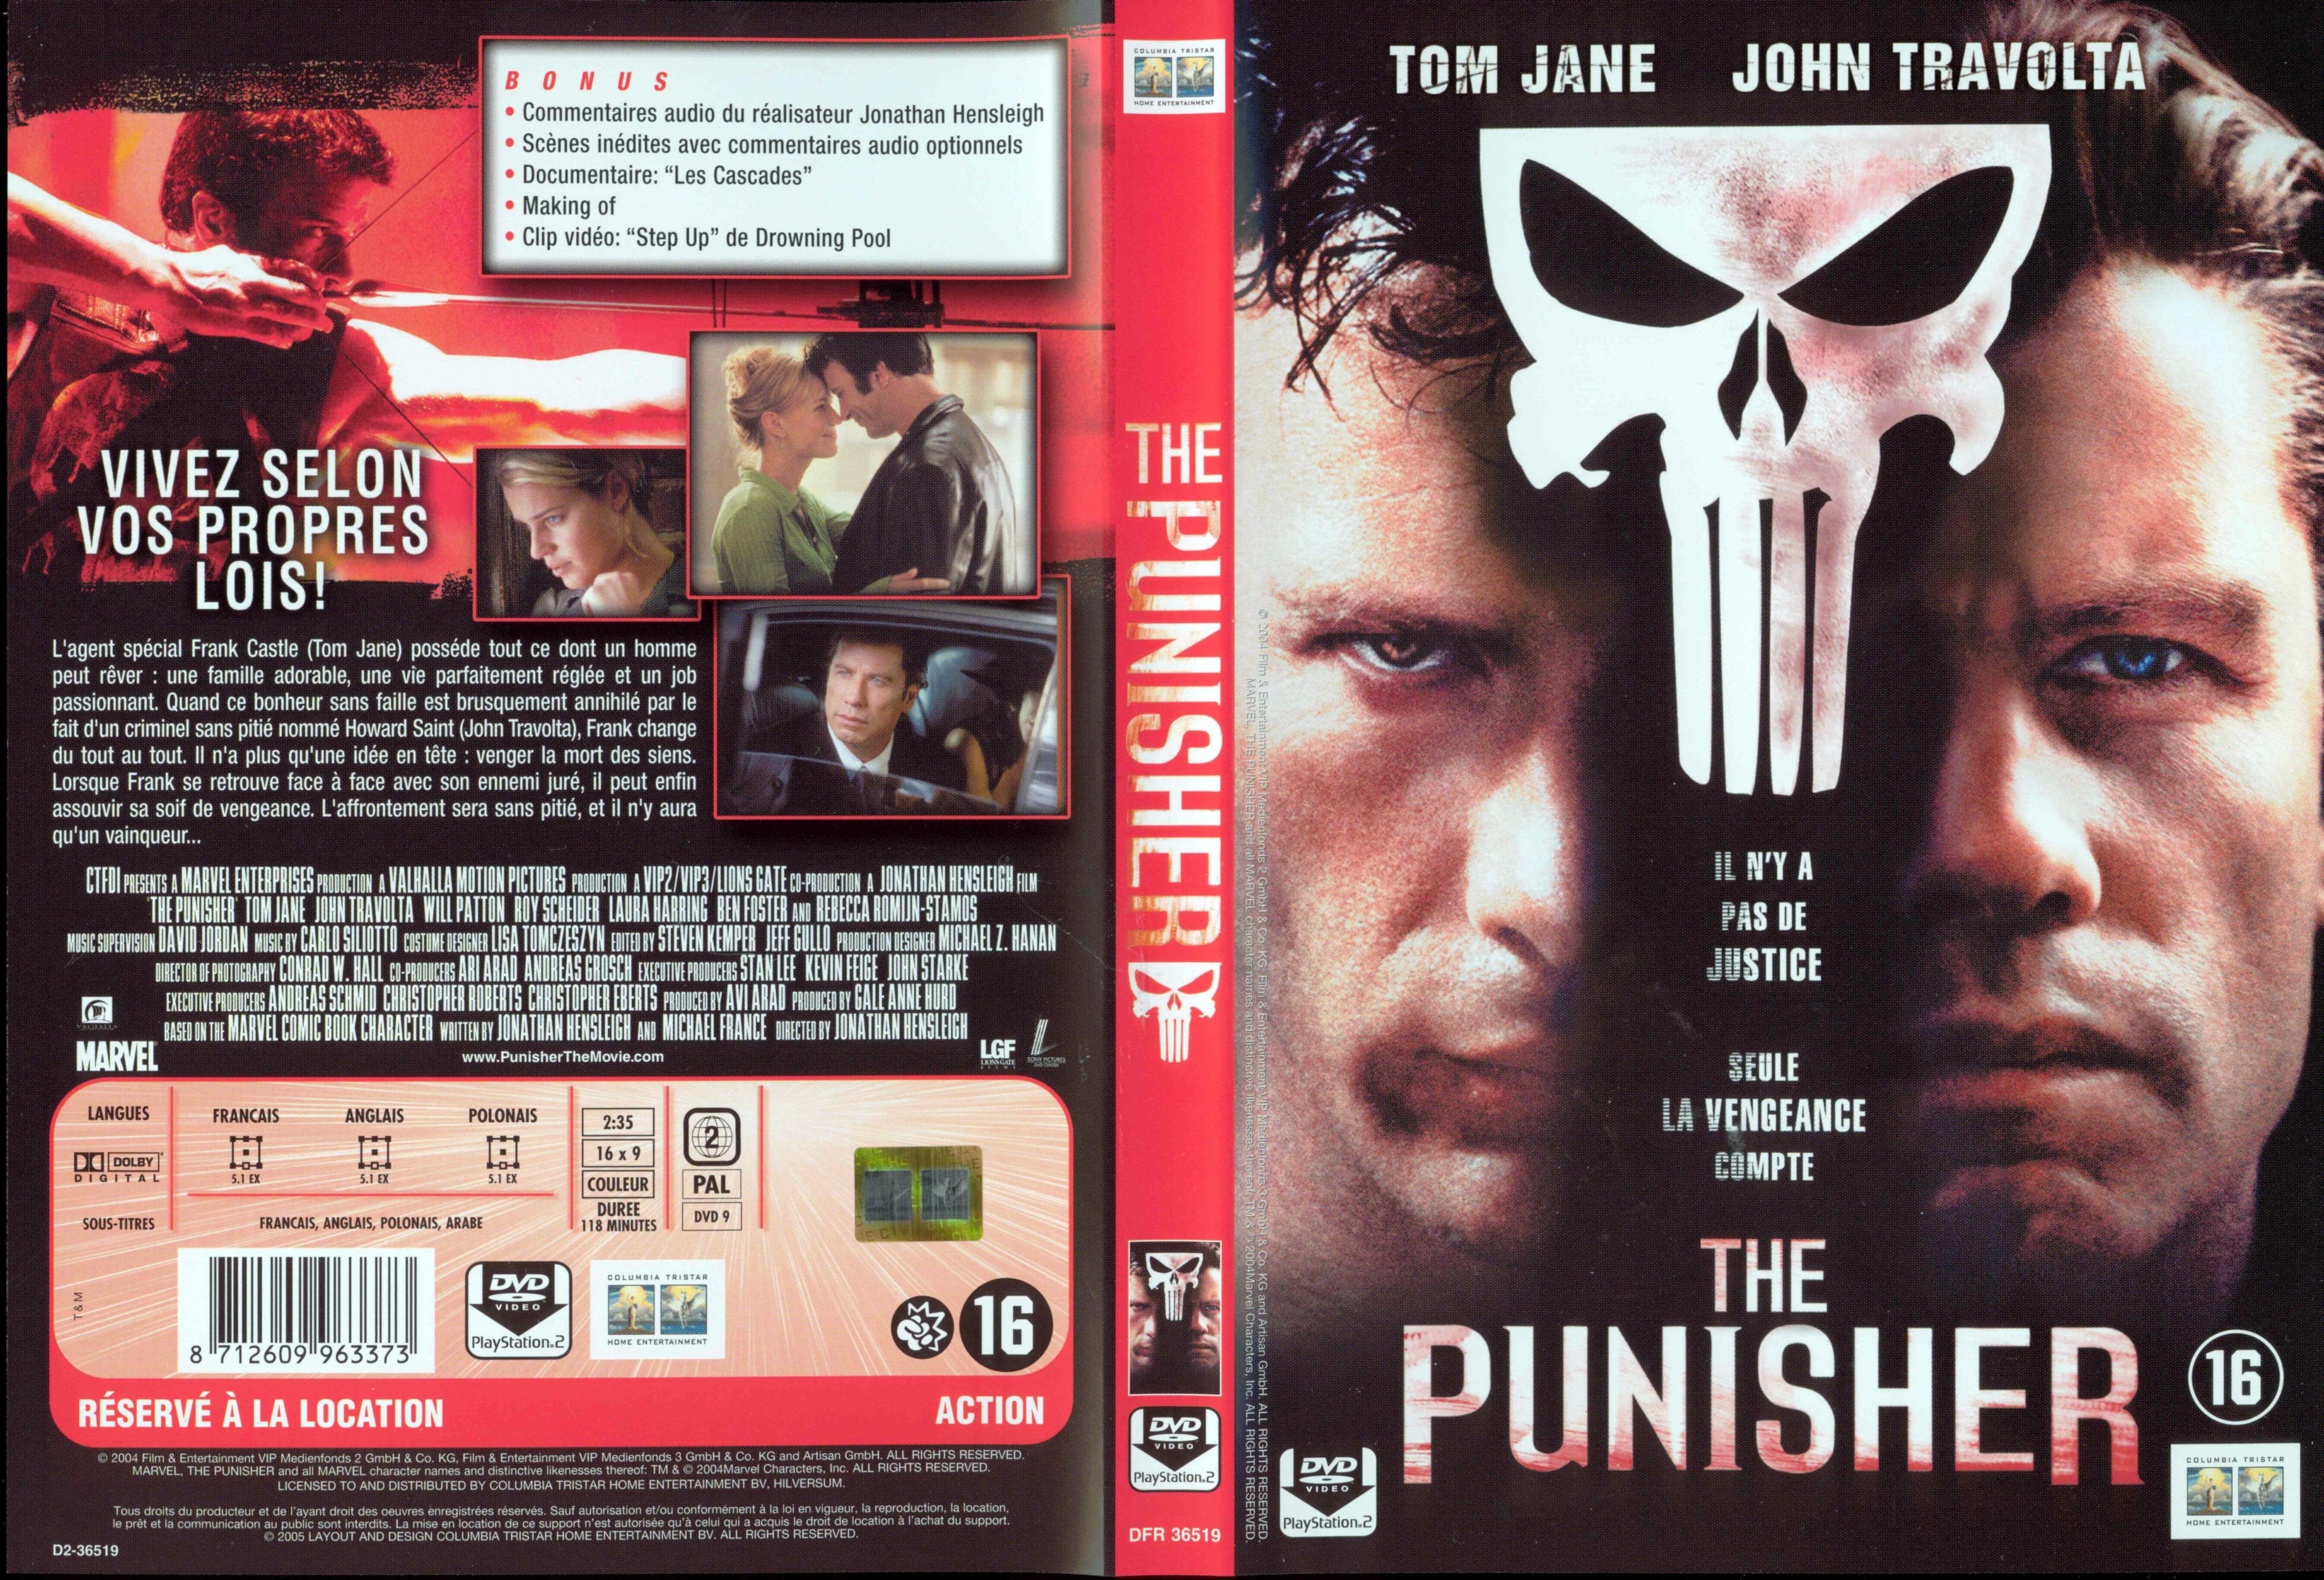 Jaquette DVD The punisher v2